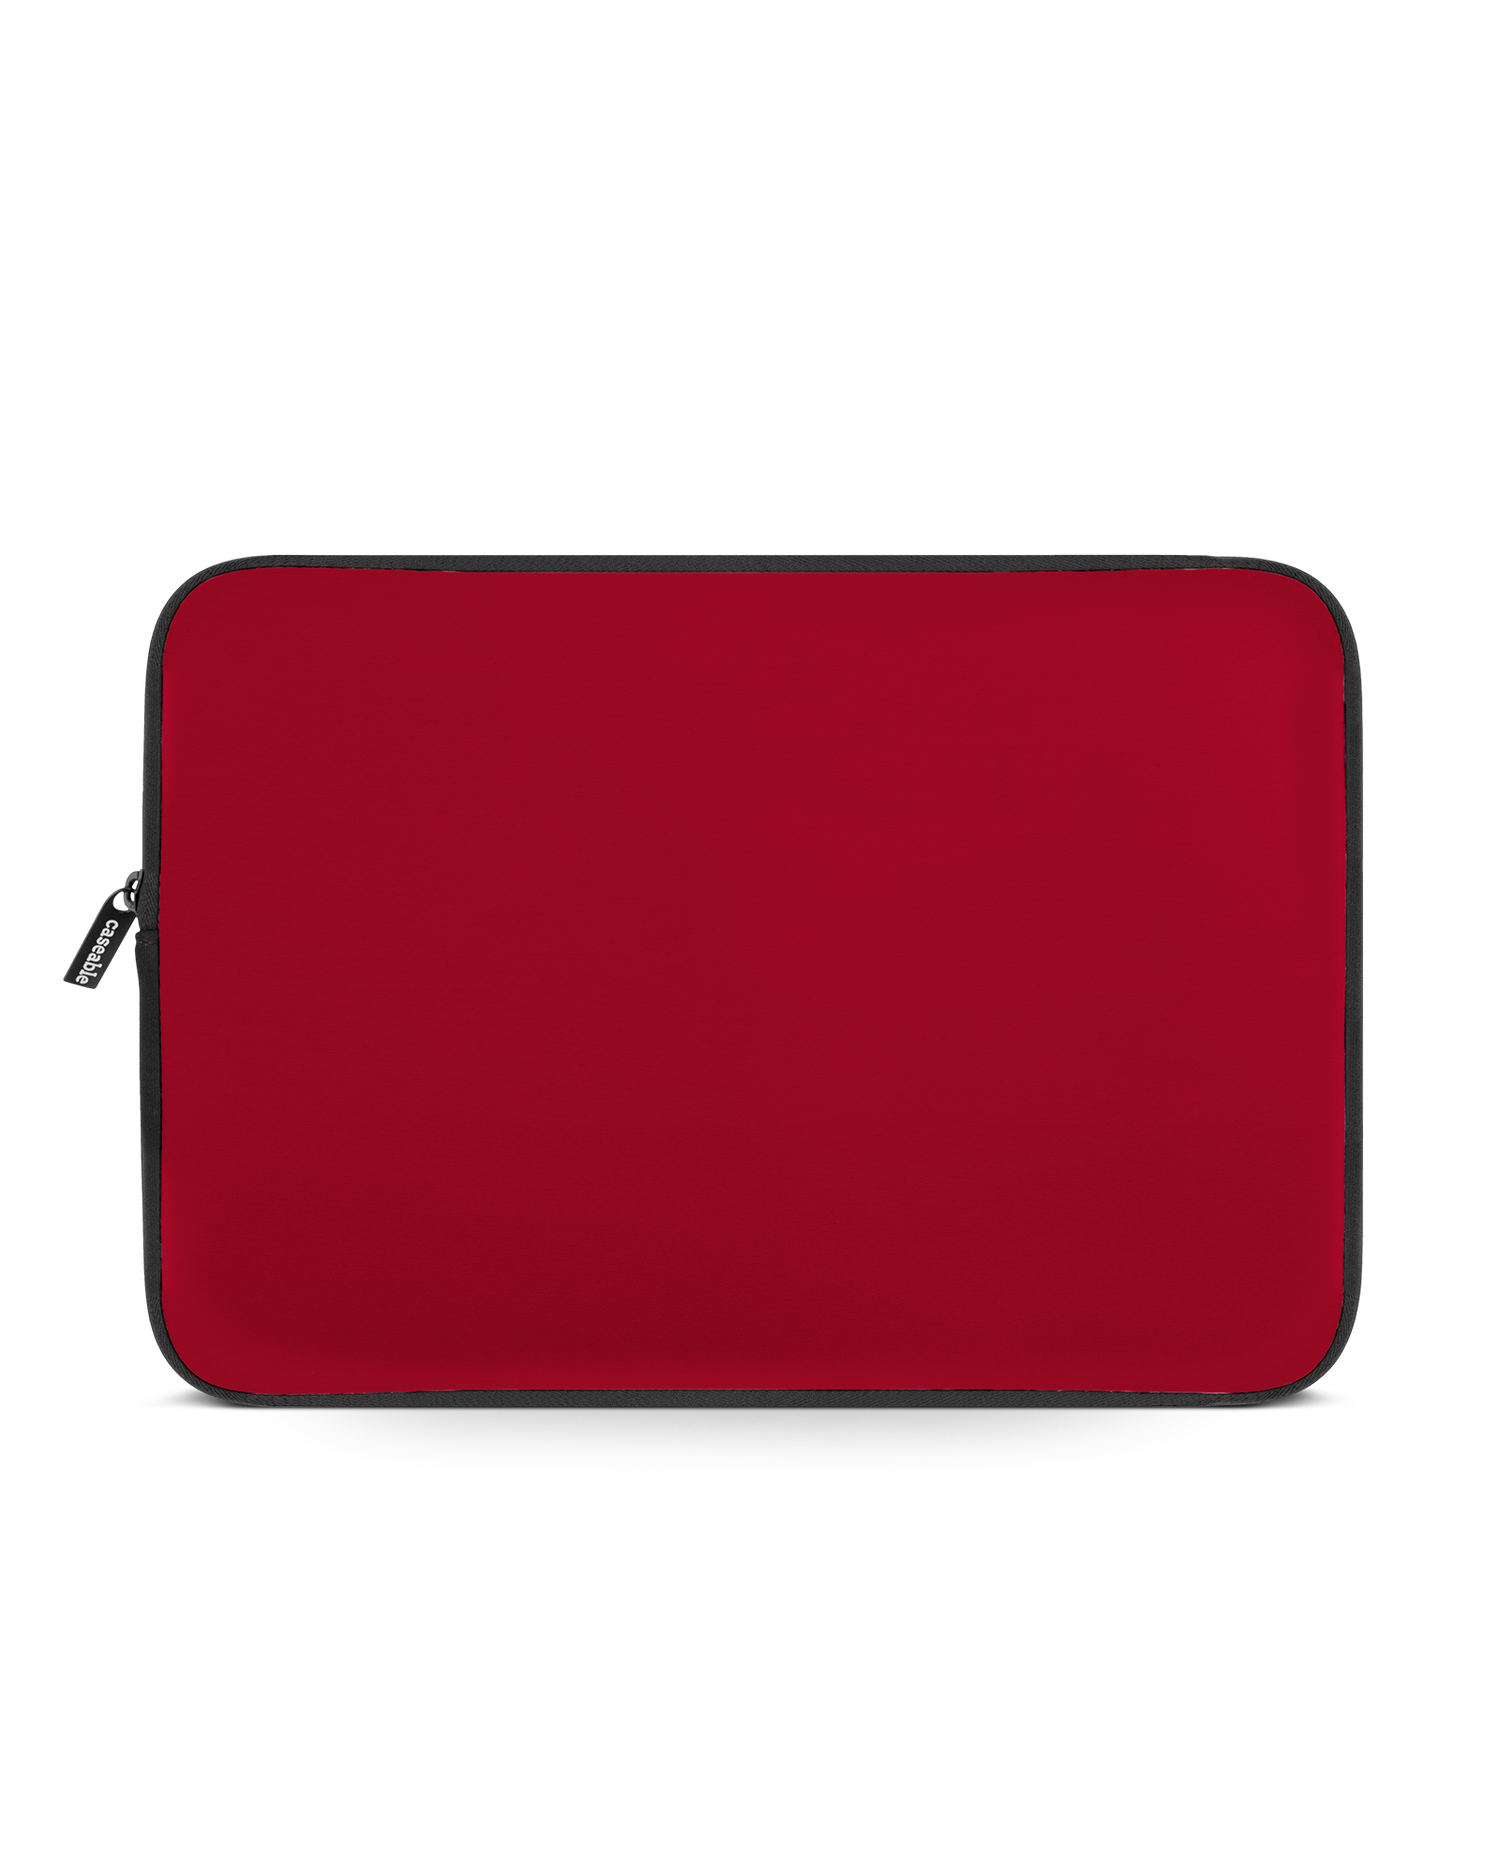 RED Laptophülle 14 Zoll: Vorderansicht